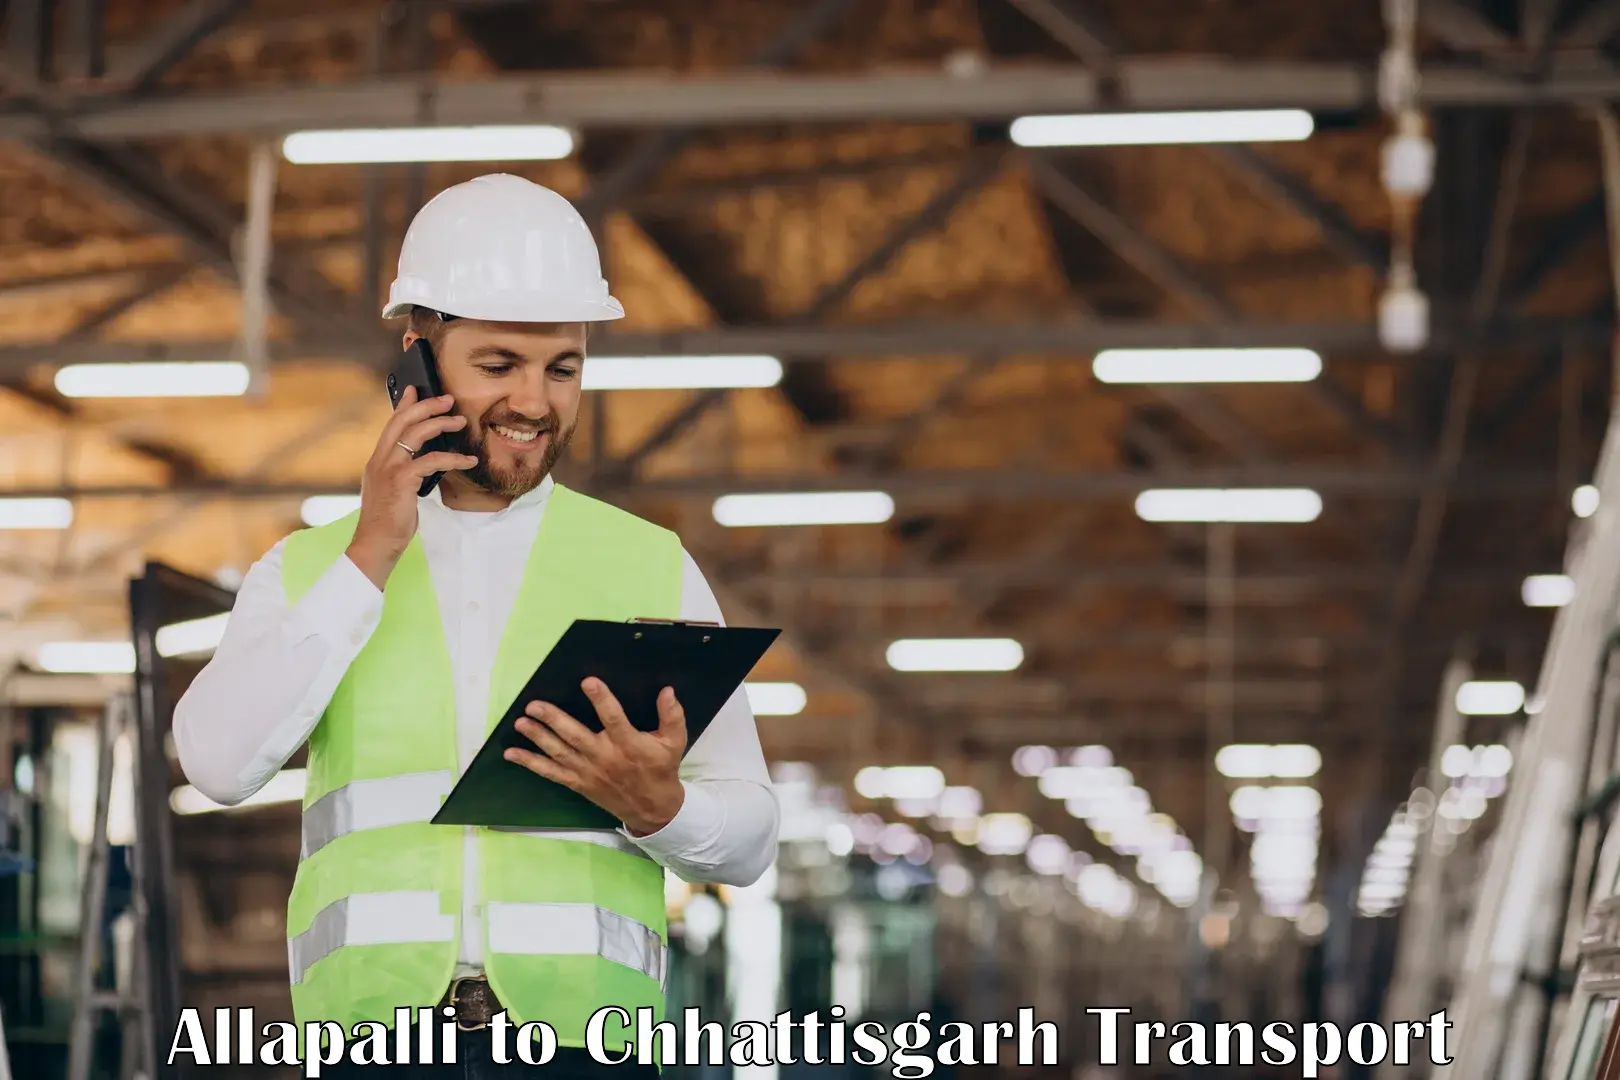 Cargo train transport services Allapalli to Patna Chhattisgarh